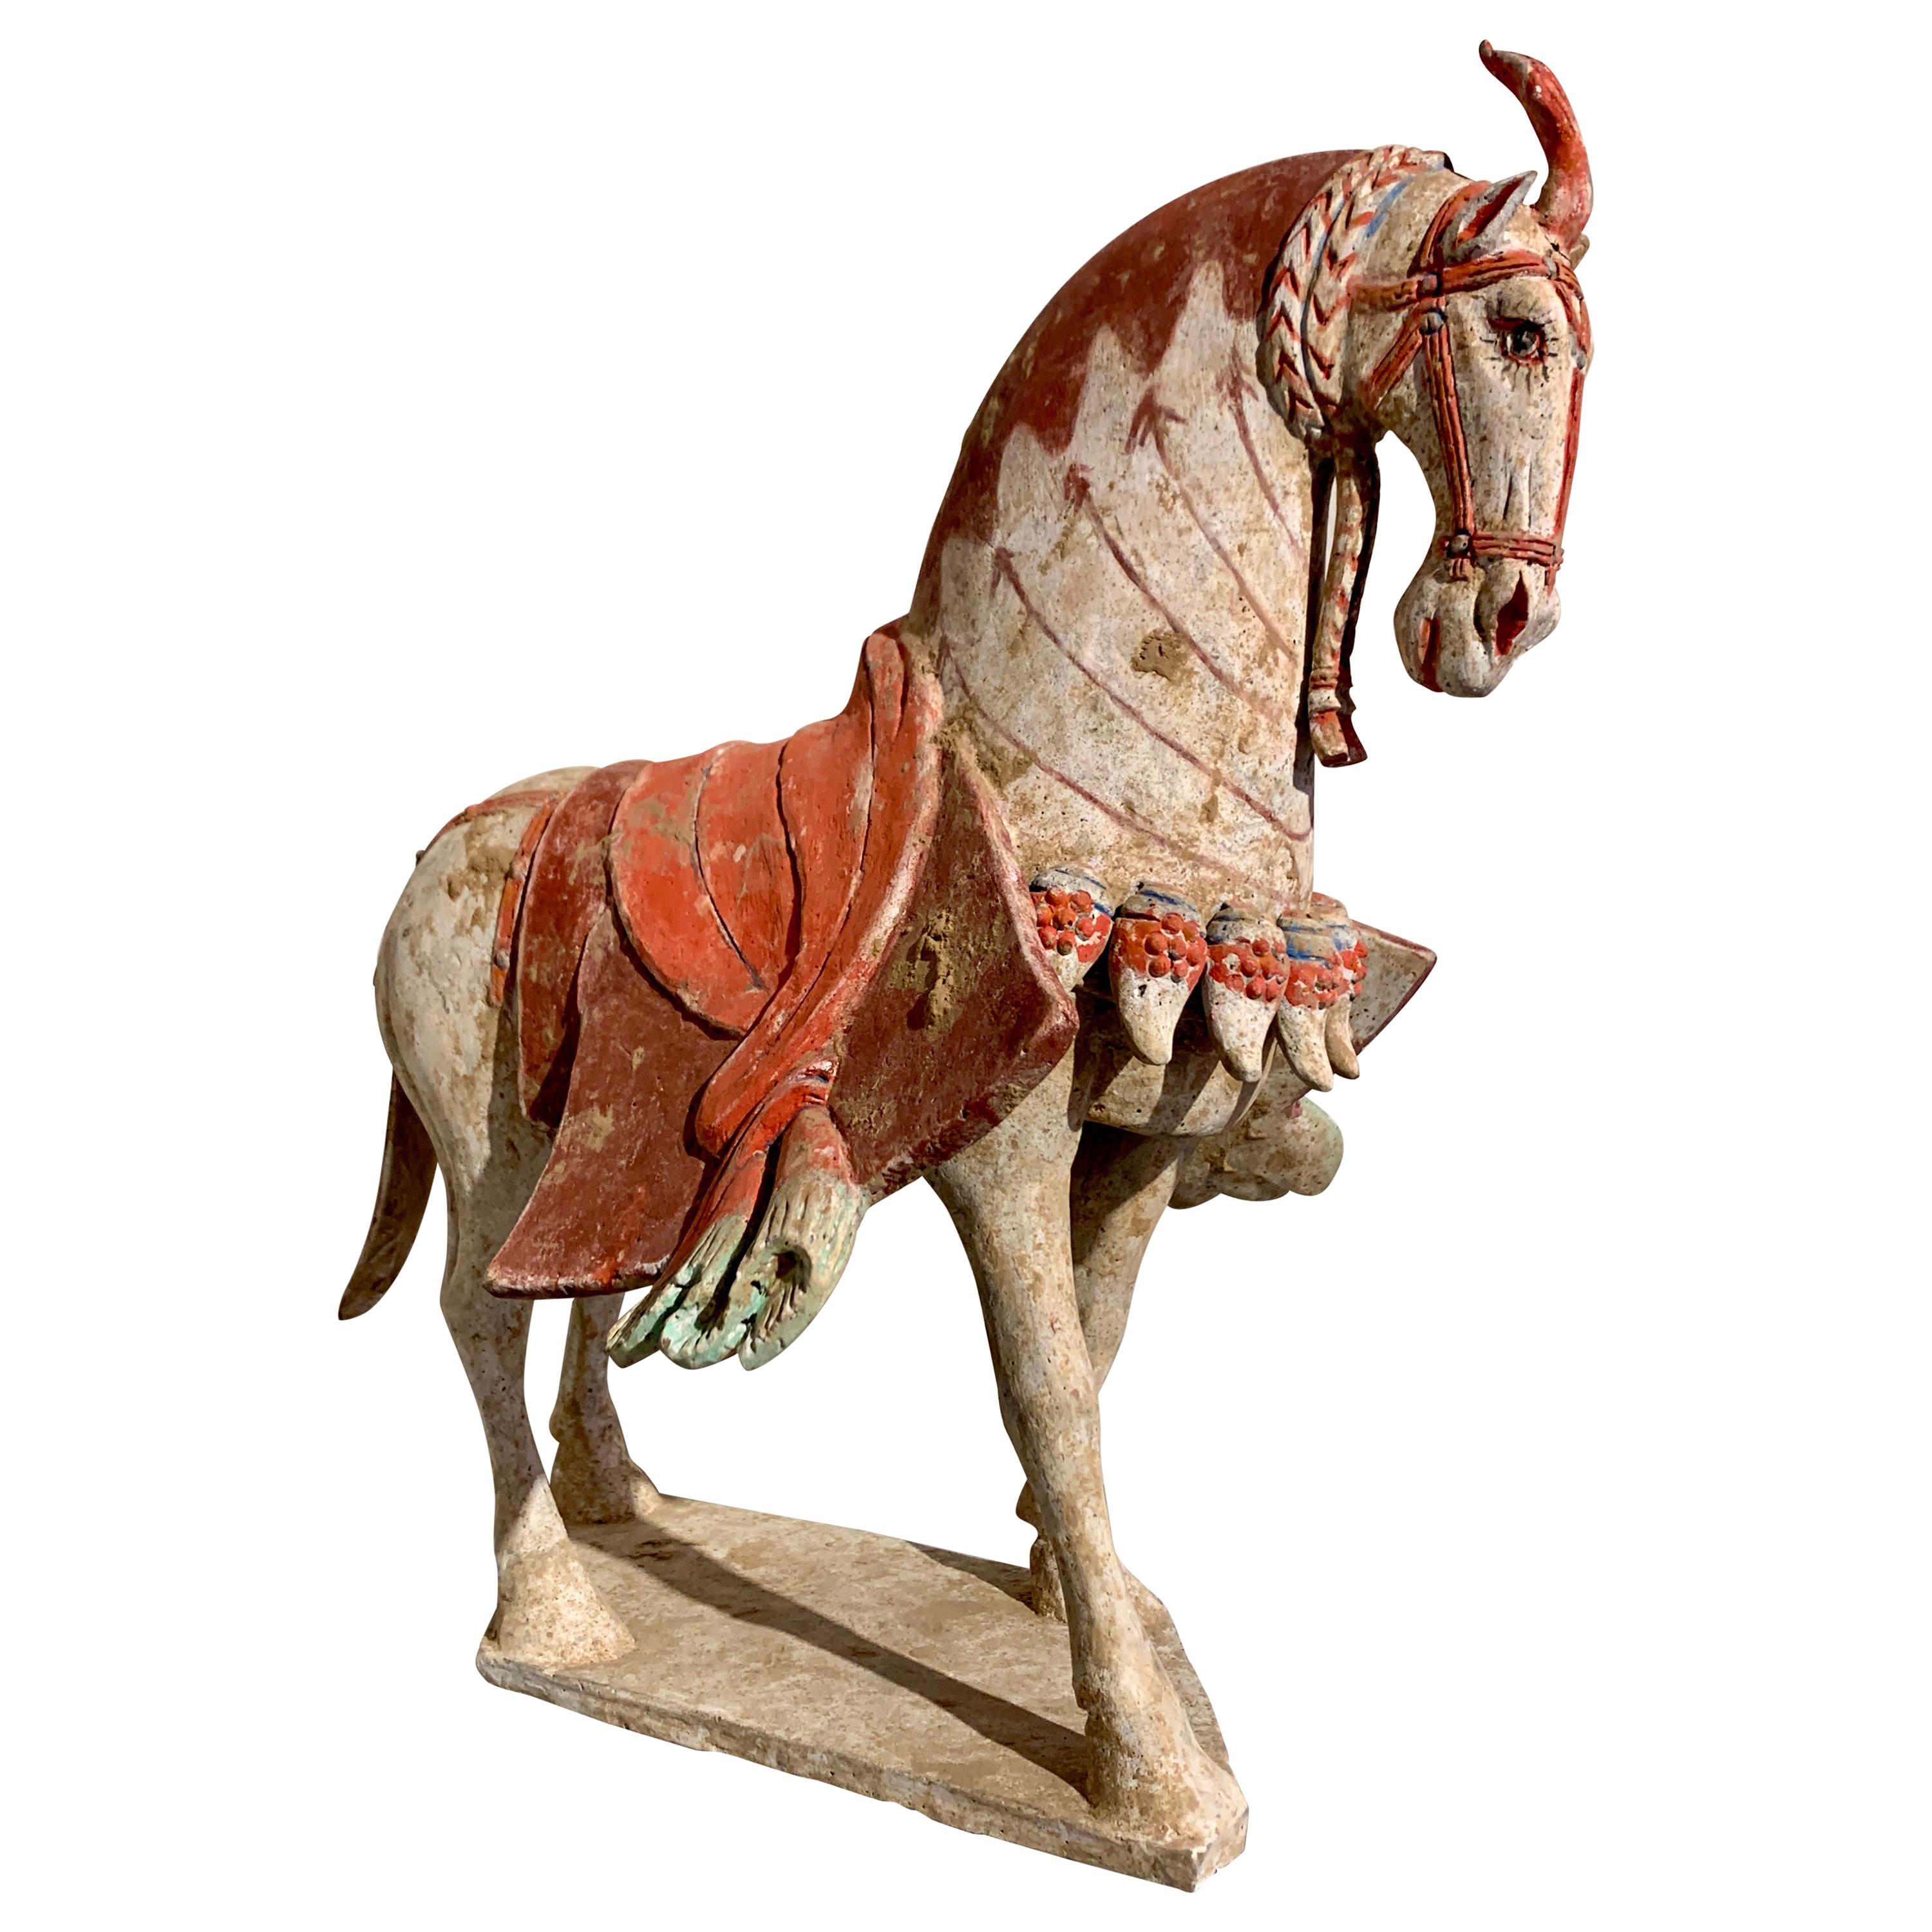 Cavallo rampante in ceramica dipinta della dinastia Qi settentrionale, VI secolo, Cina